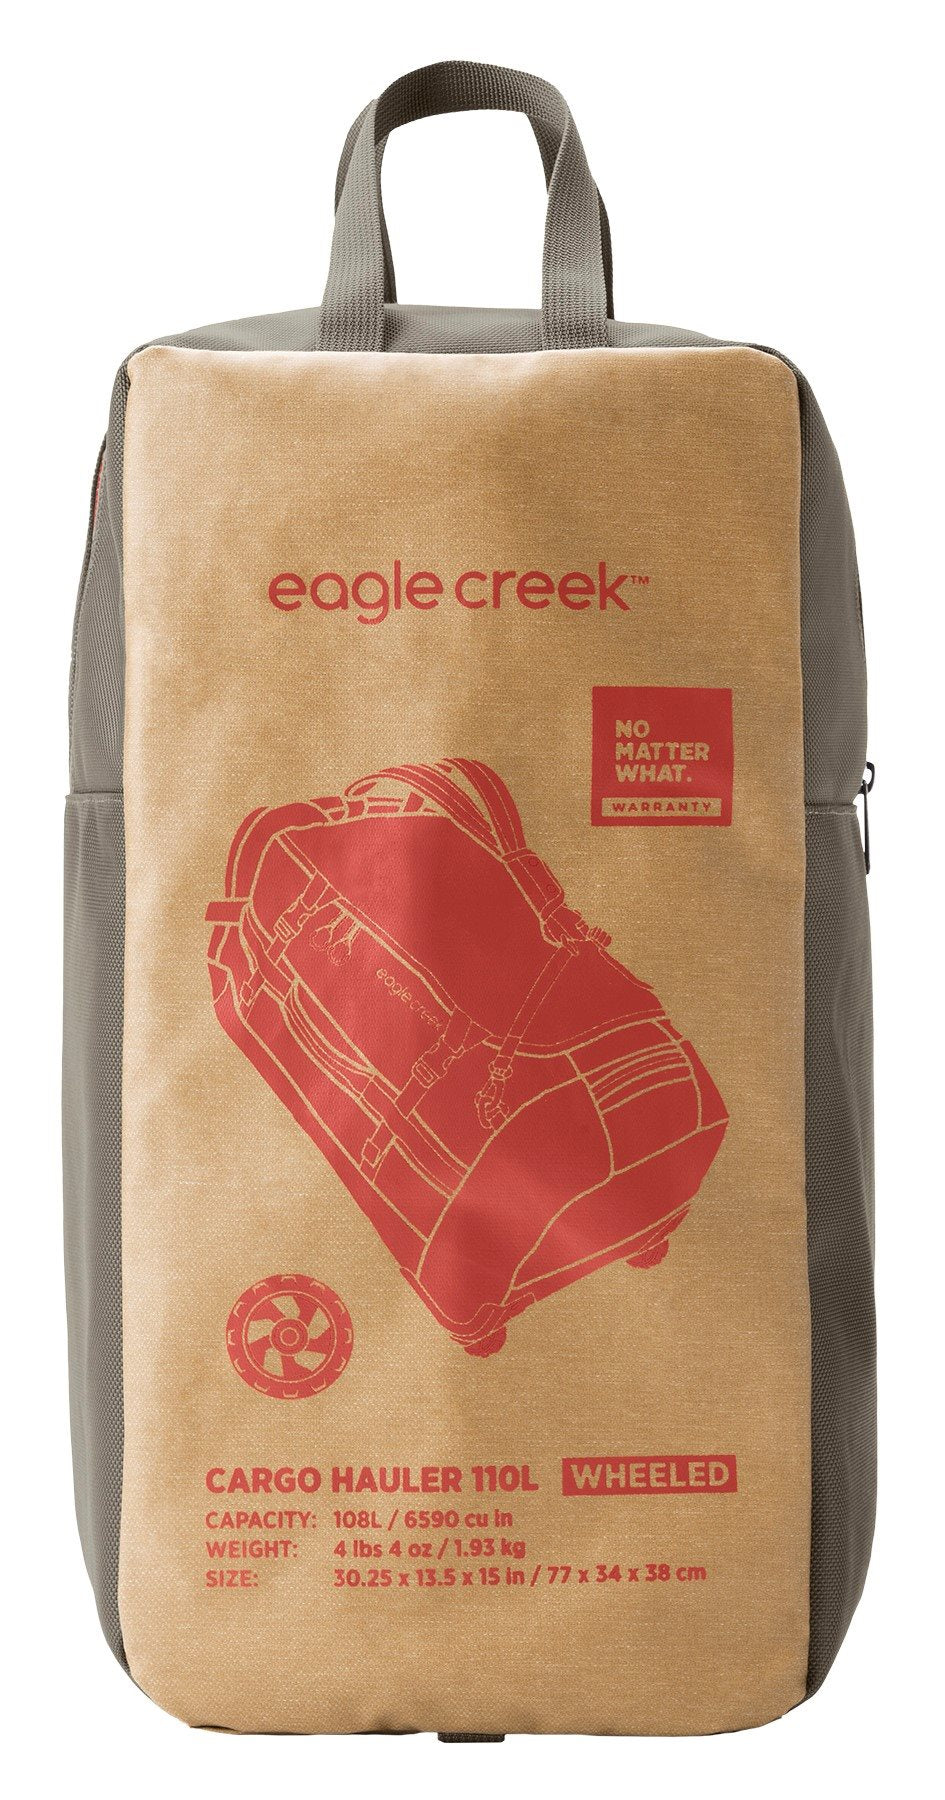 Eagle Creek Cargo Hauler Wheeled Duffel - 110L - Safari Brown Reistas - Reisartikelen-nl